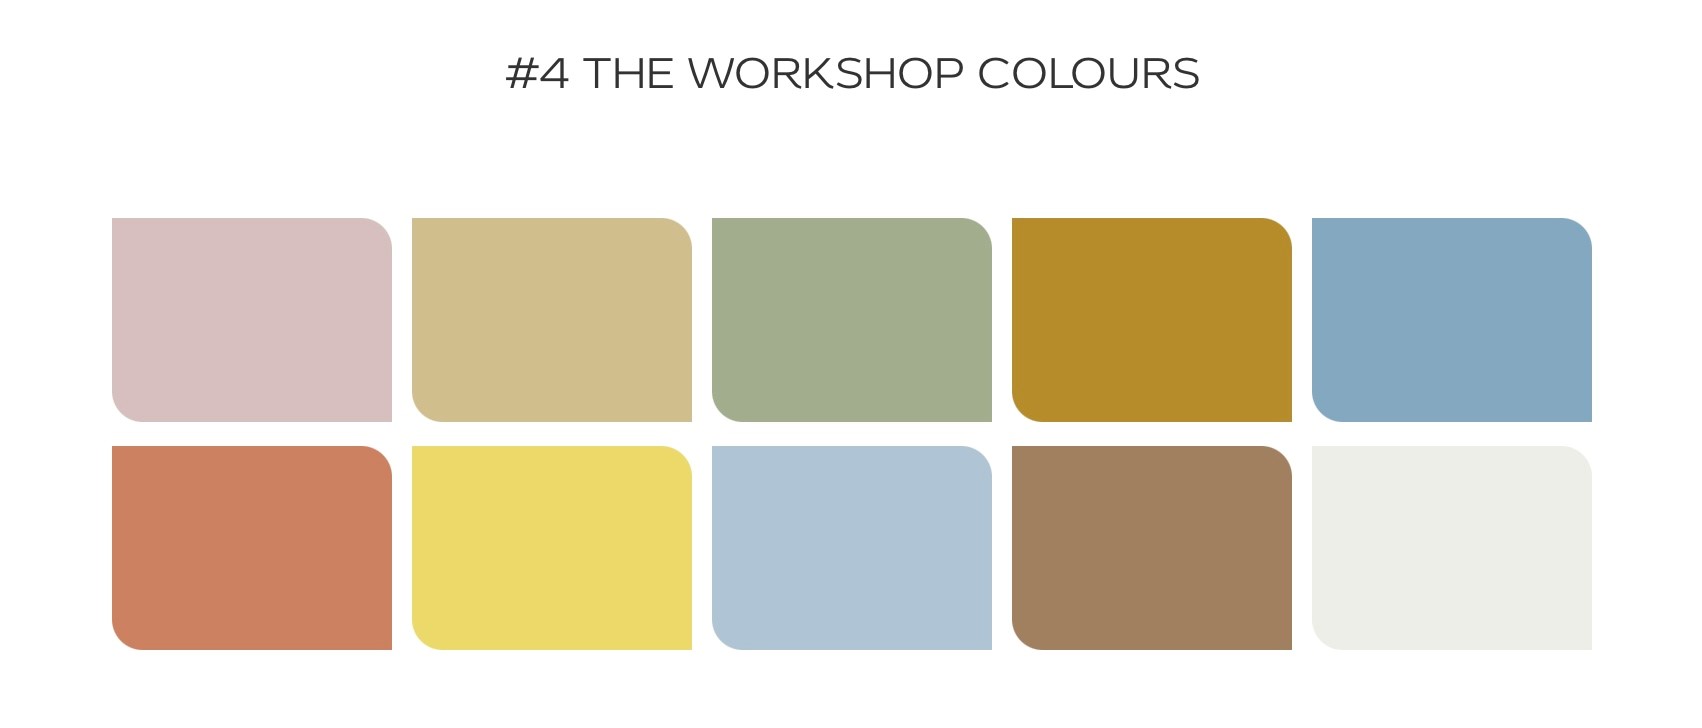 Dulux Workshop Colour Palette